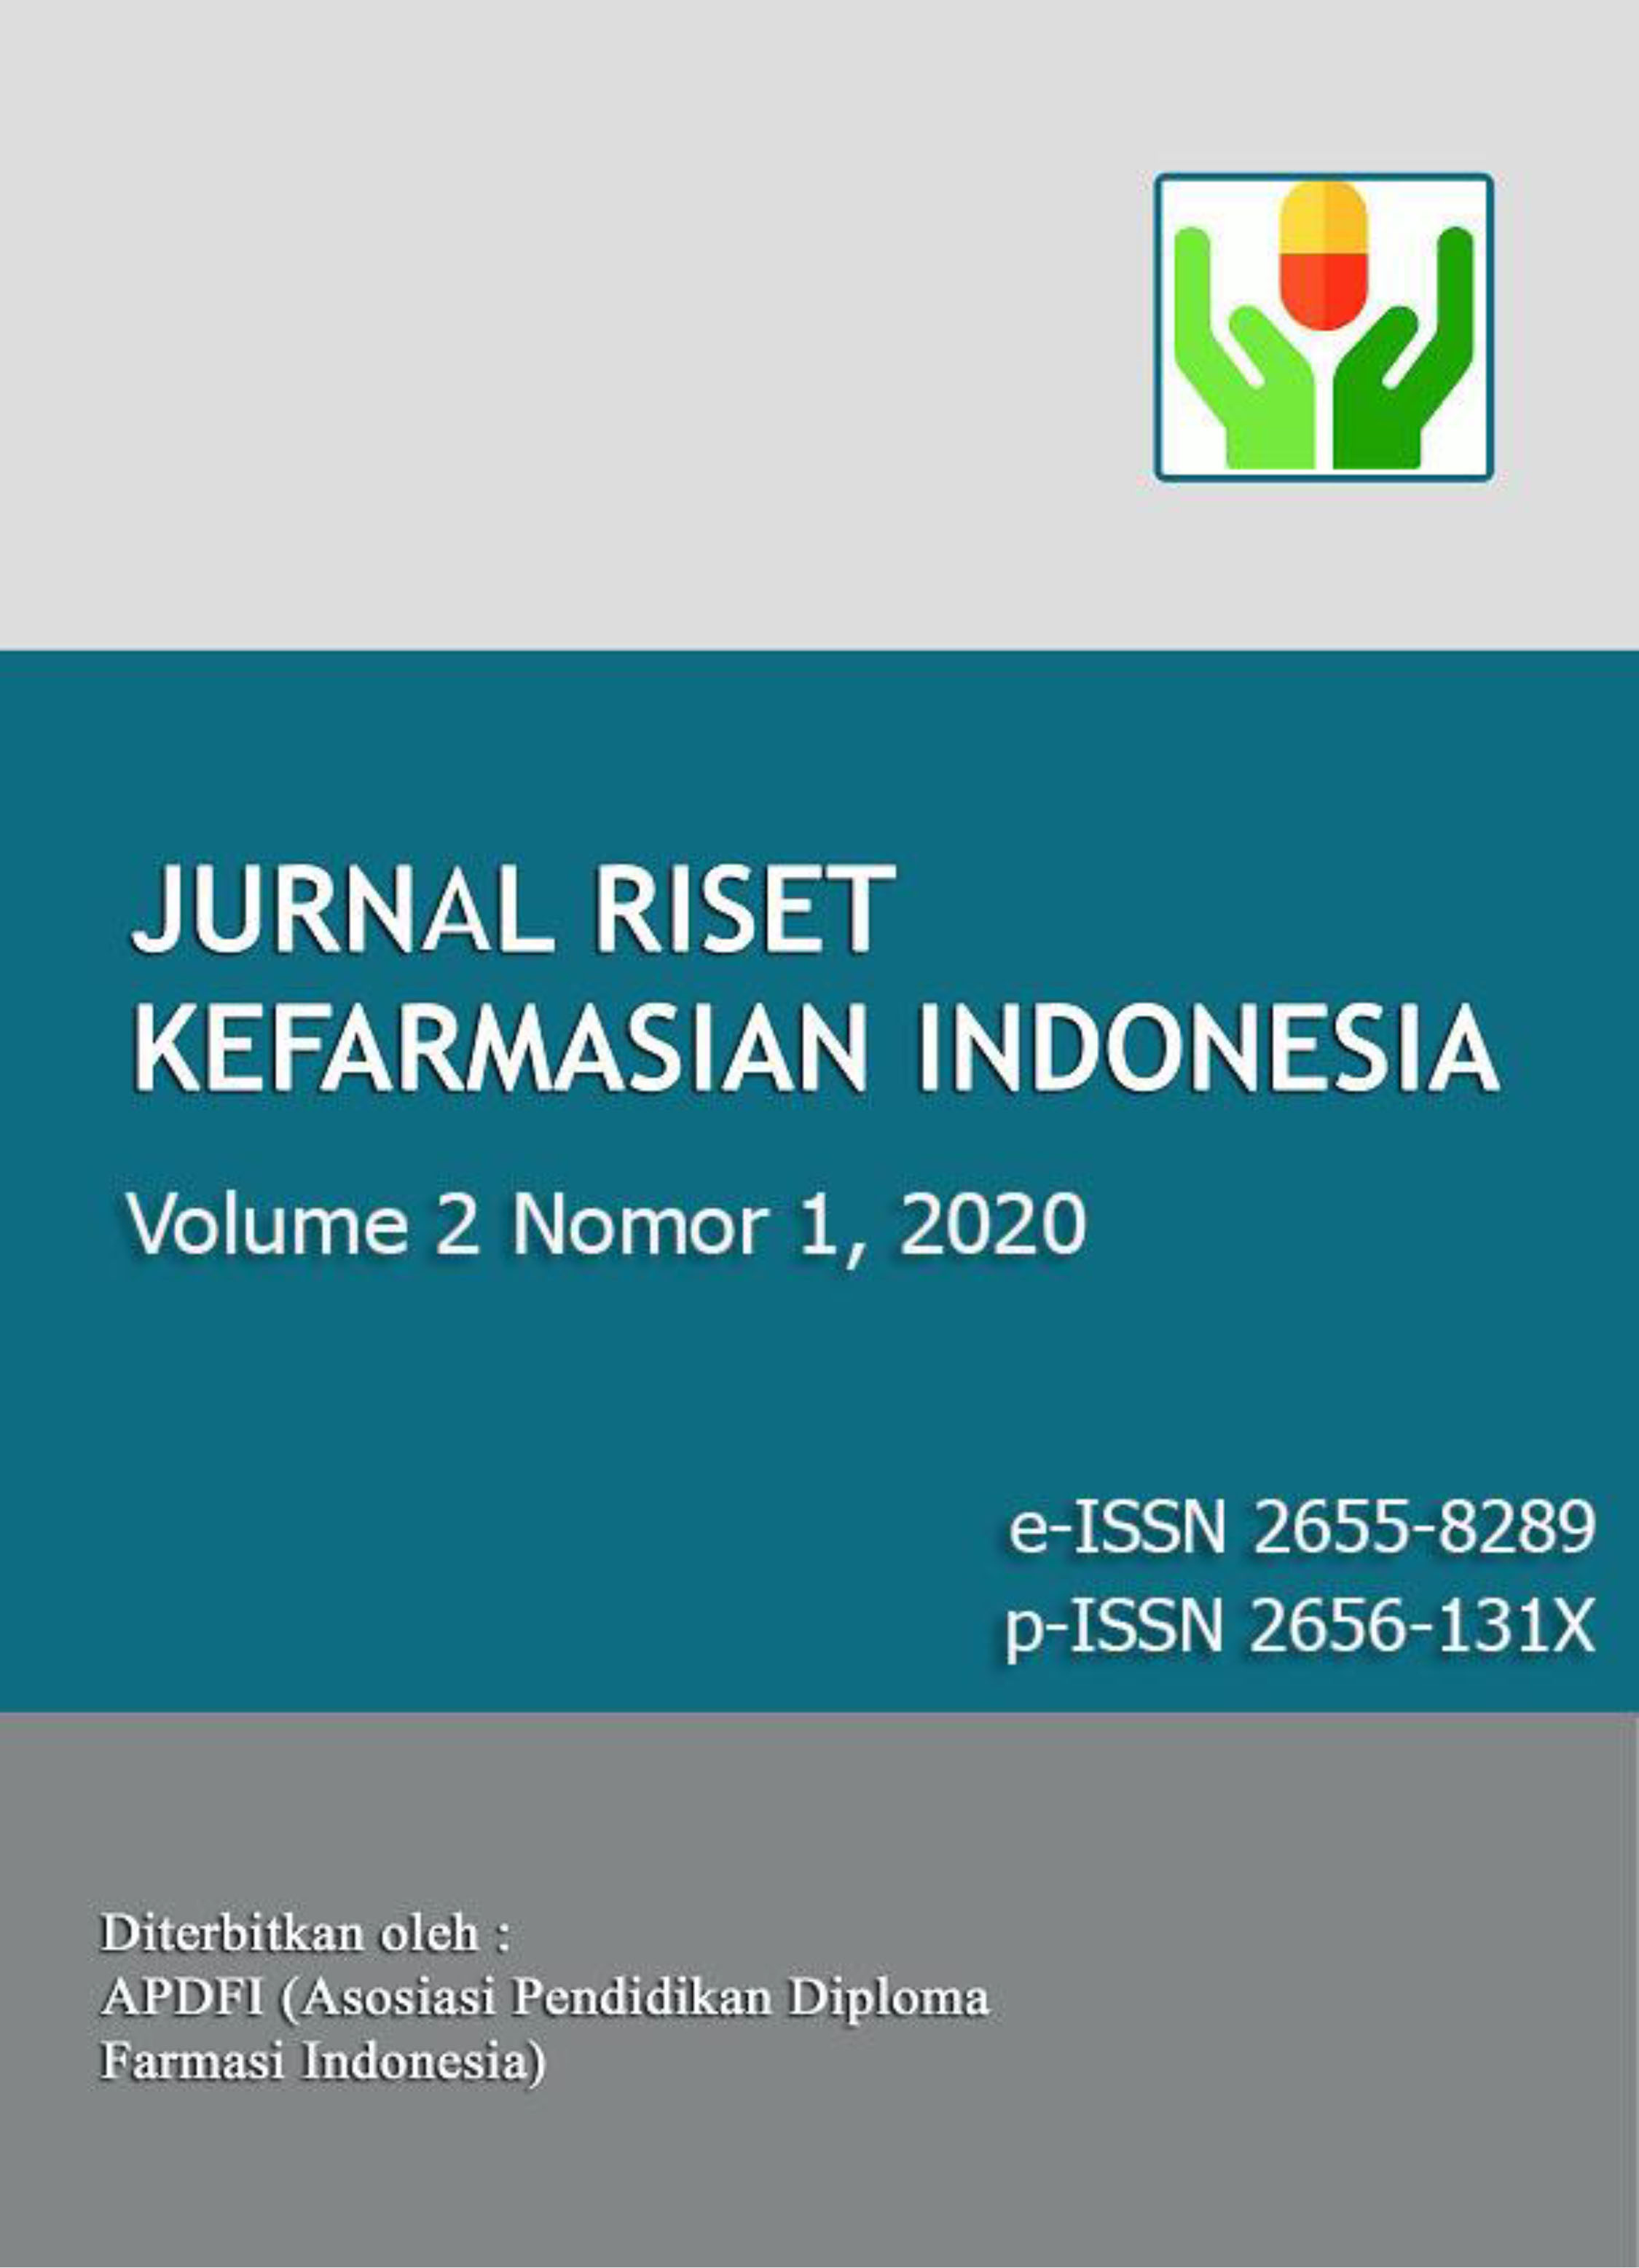 Jurnal Riset Kefarmasian Indonesia Vol. 2 Nomor 1 2020